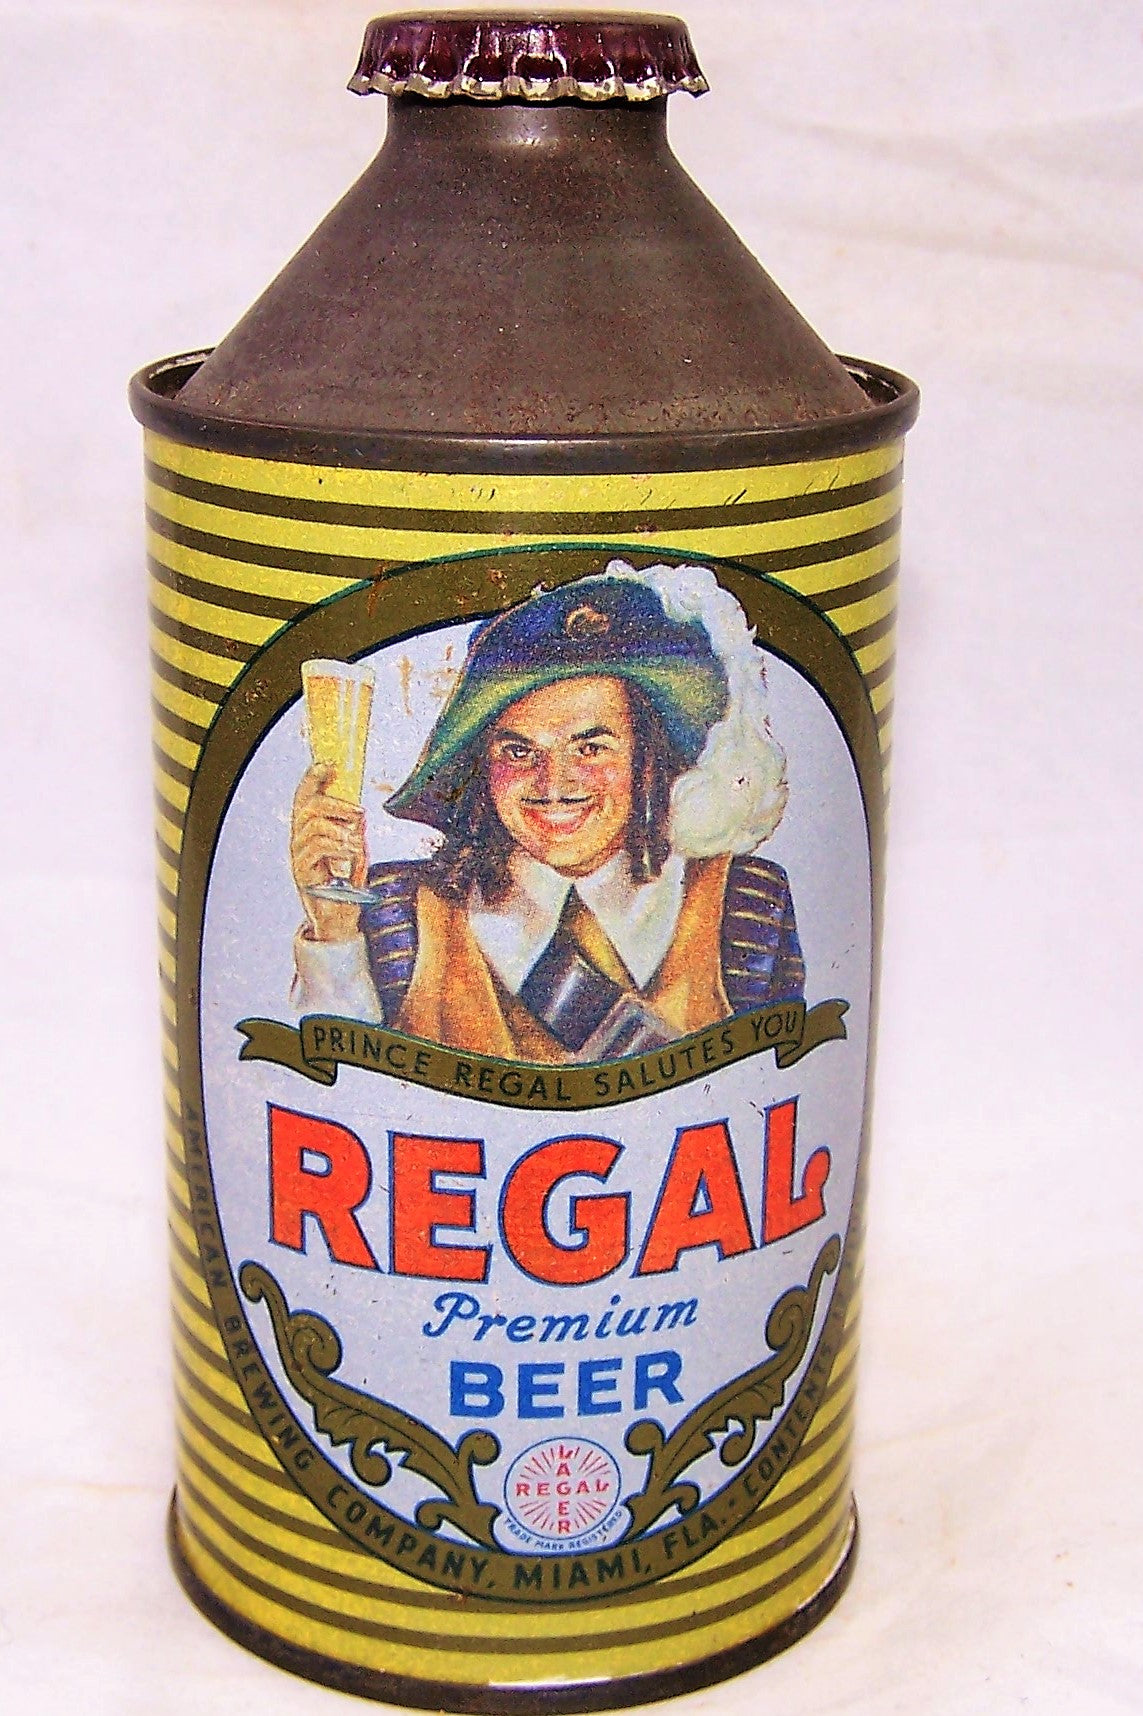 Regal Premium Beer, USBC 181-10 (Miami) Grade 1- Sold on 02/21/19